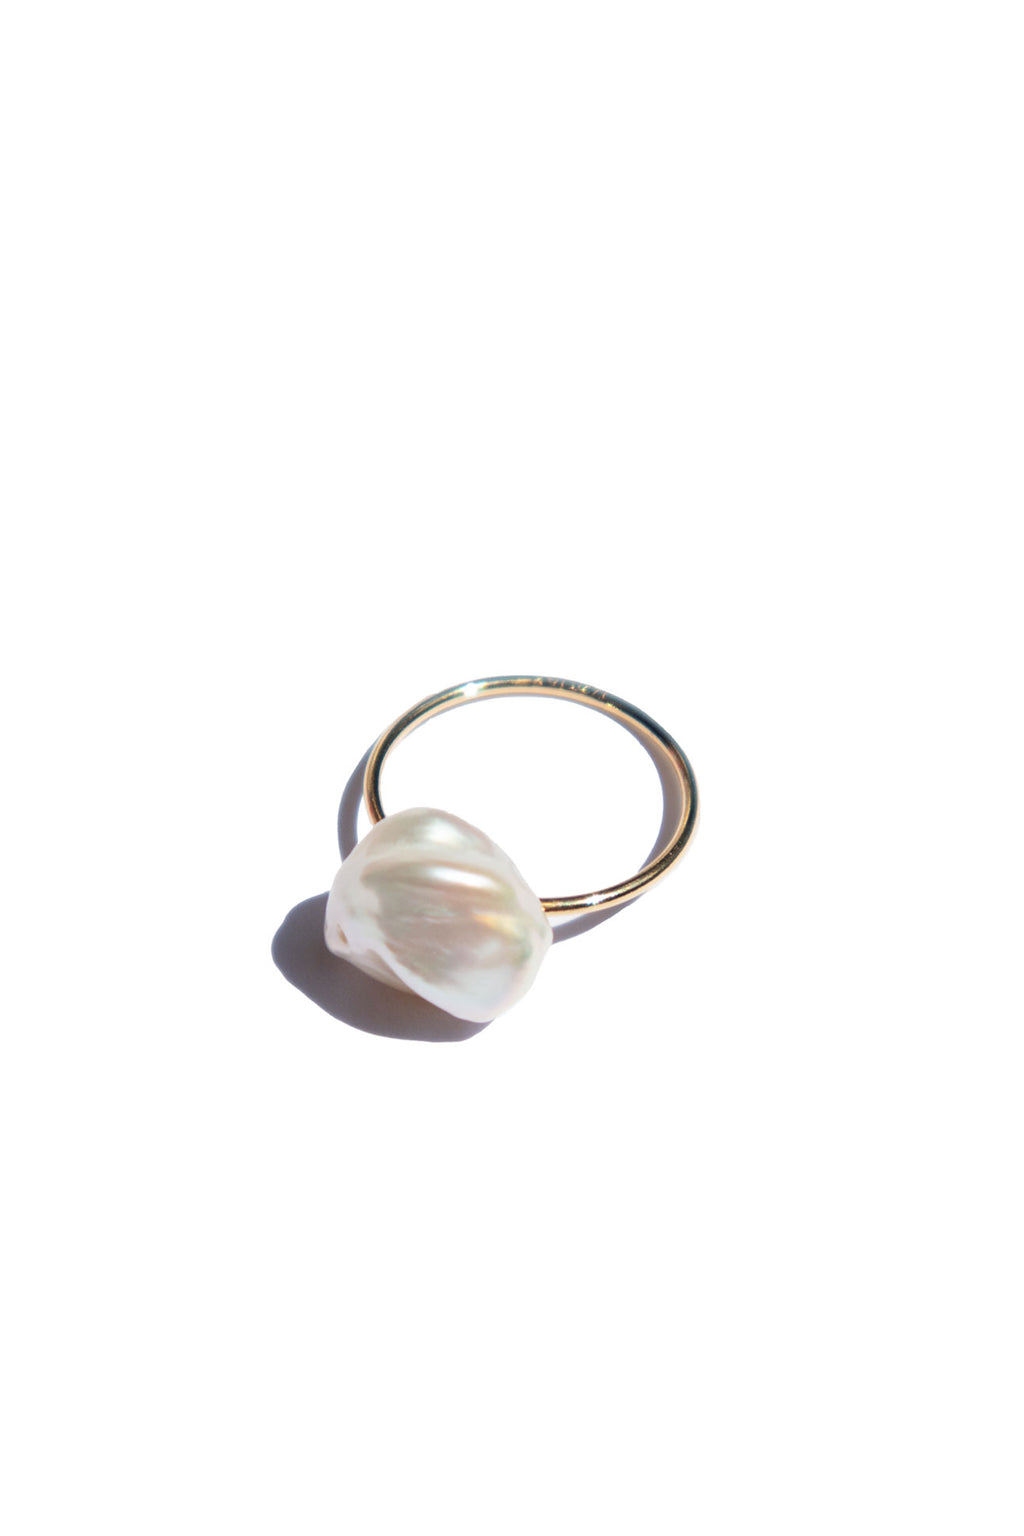 of-marga-imogen-pearl-skinny-gold-ring-1_1